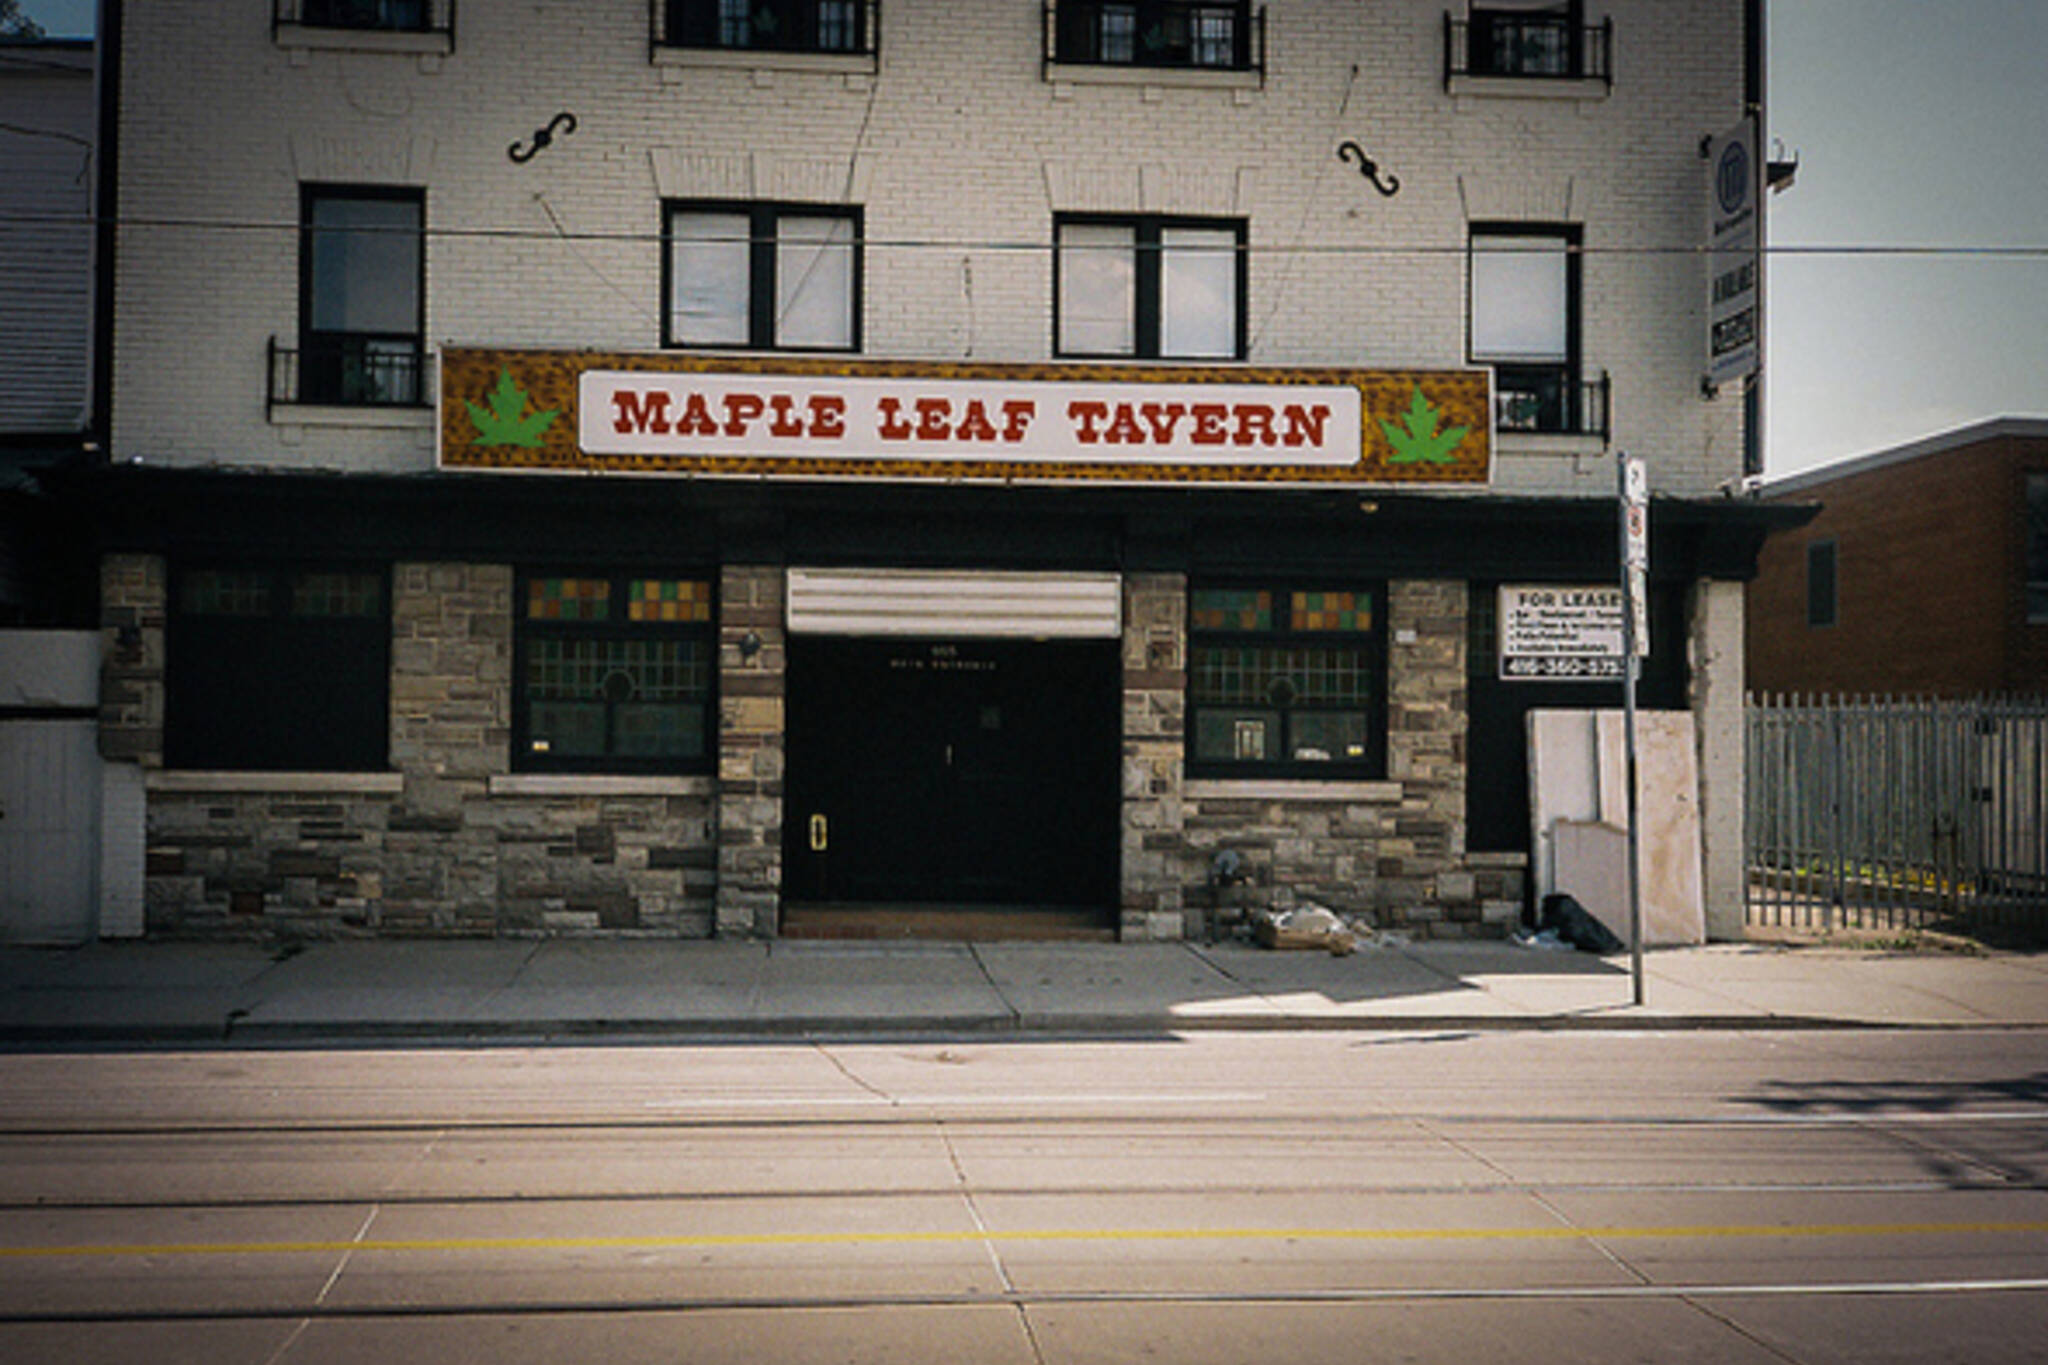 Maple leaf tavern